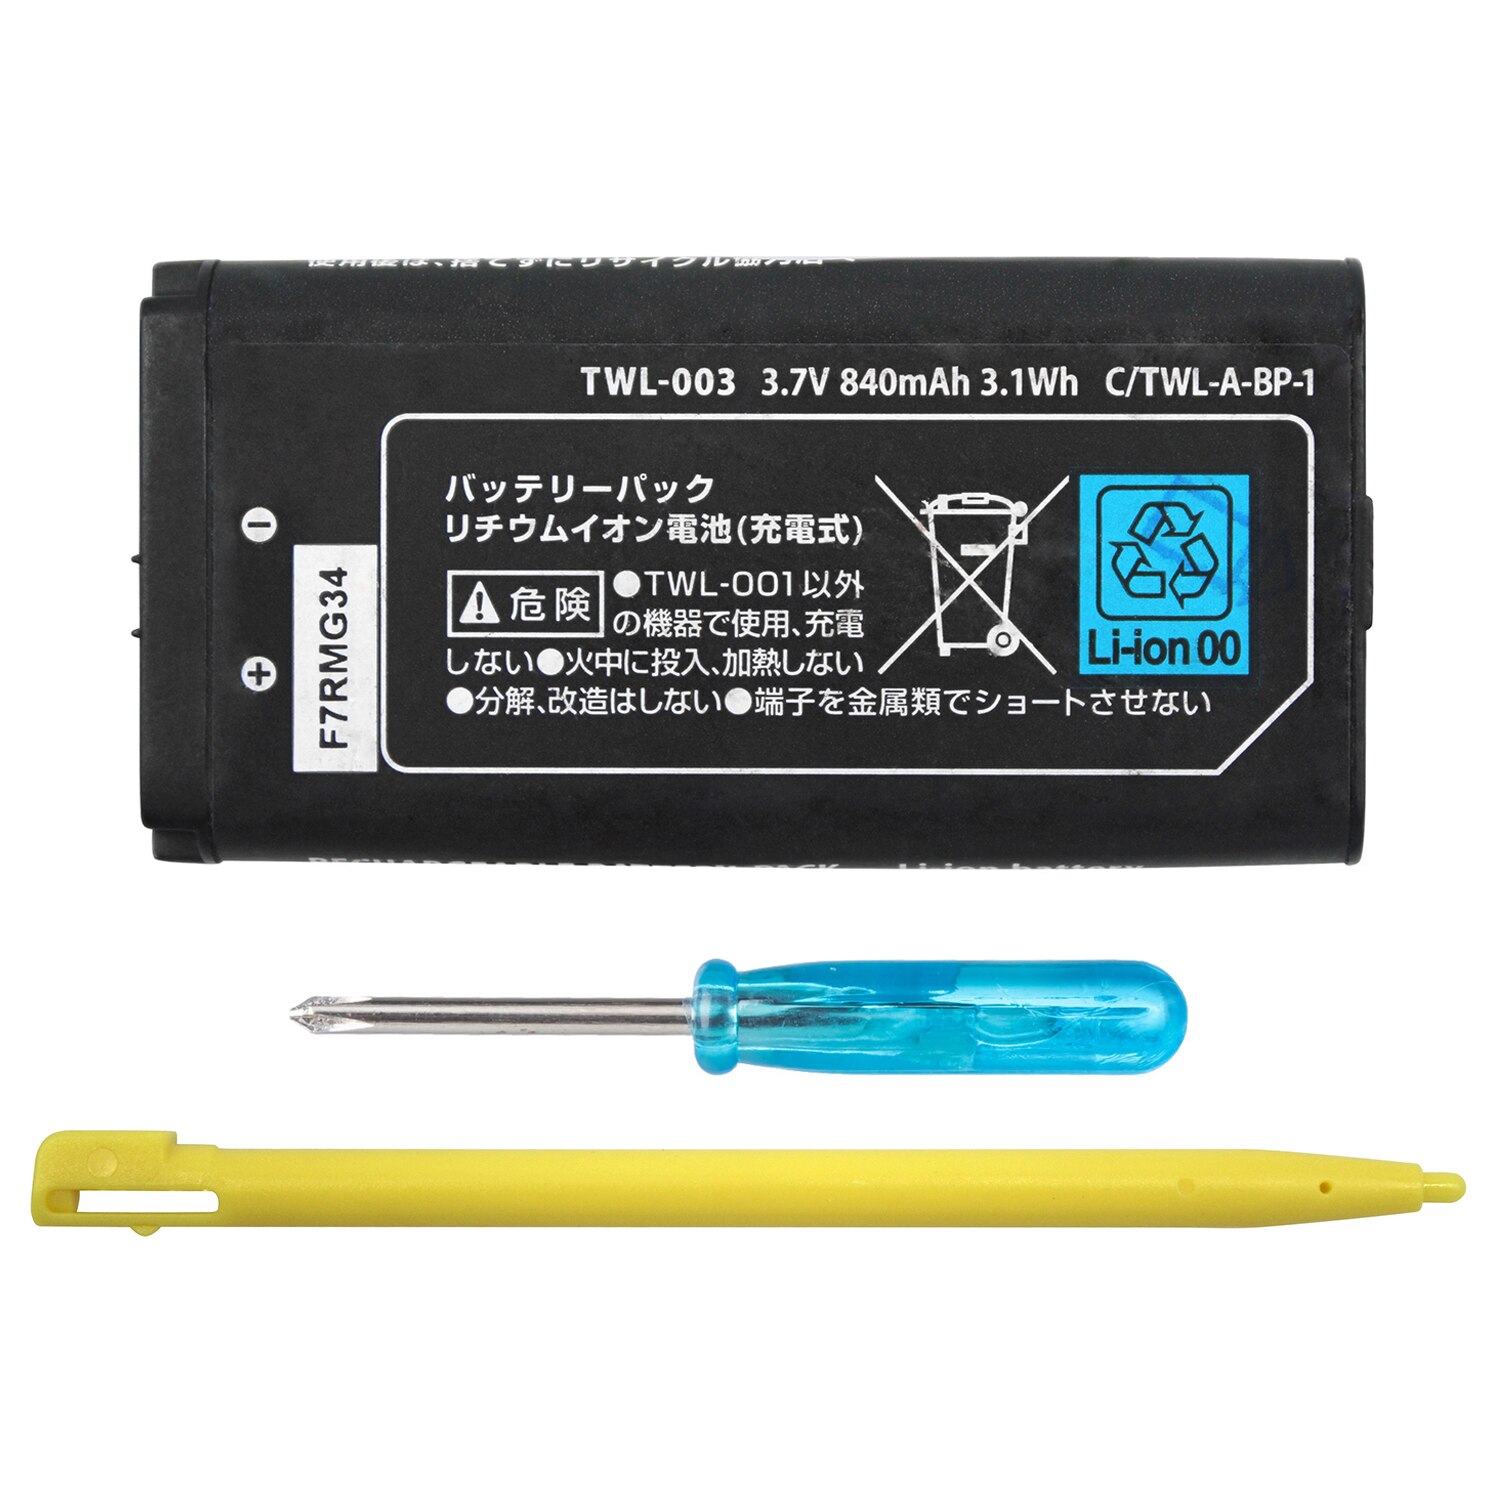 OSTENT 840mAh Oplaadbare Lithium-ion Batterij + Tool + Pen Pack Kit voor Nintendo DSi NDSi